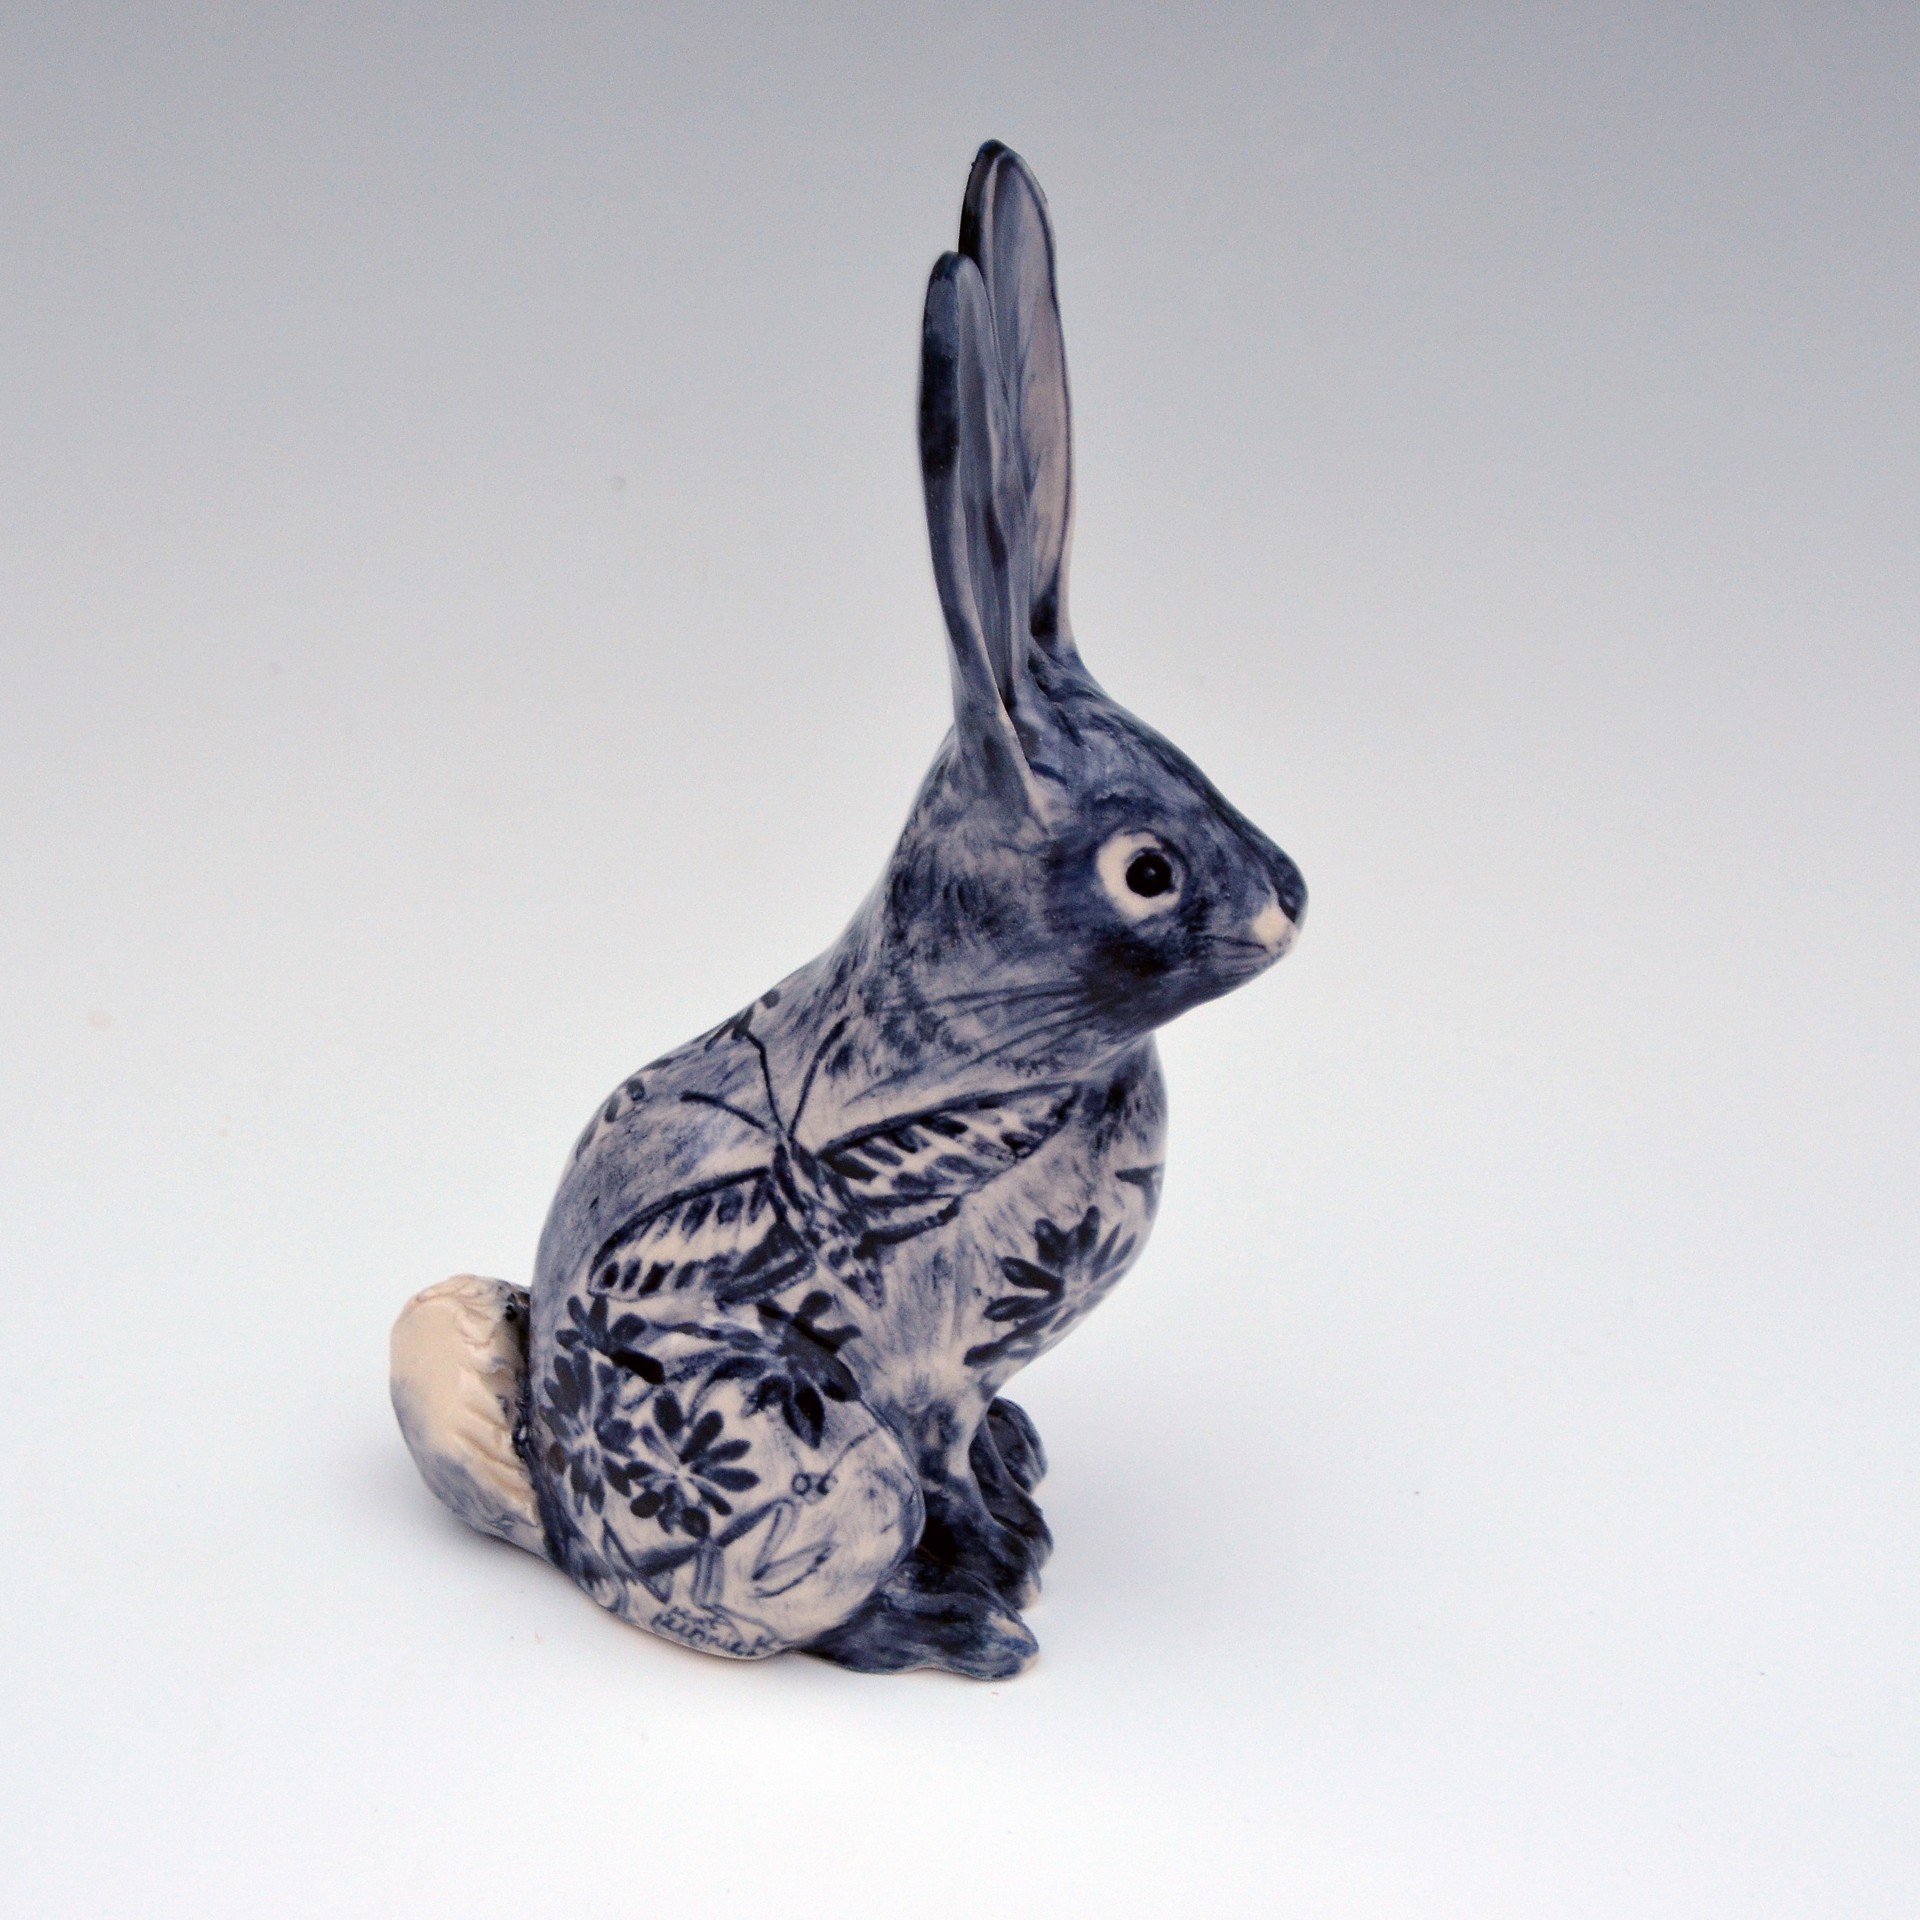 Bunny by Kat Kinnick